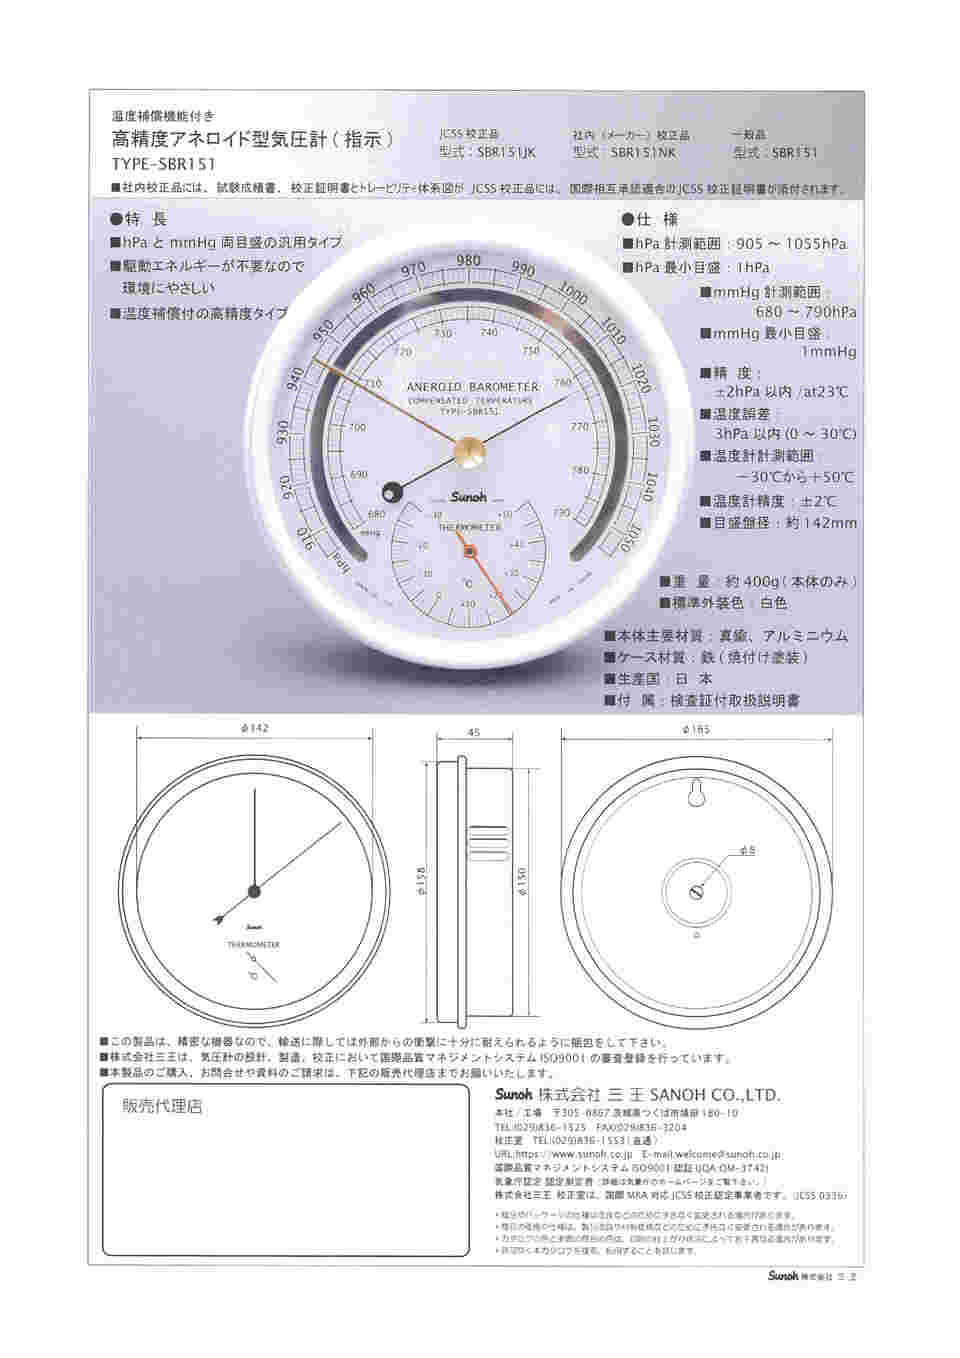 64-7814-14 高精度アネロイド型気圧計(汎用タイプ) TYPE SBR-151 NK 